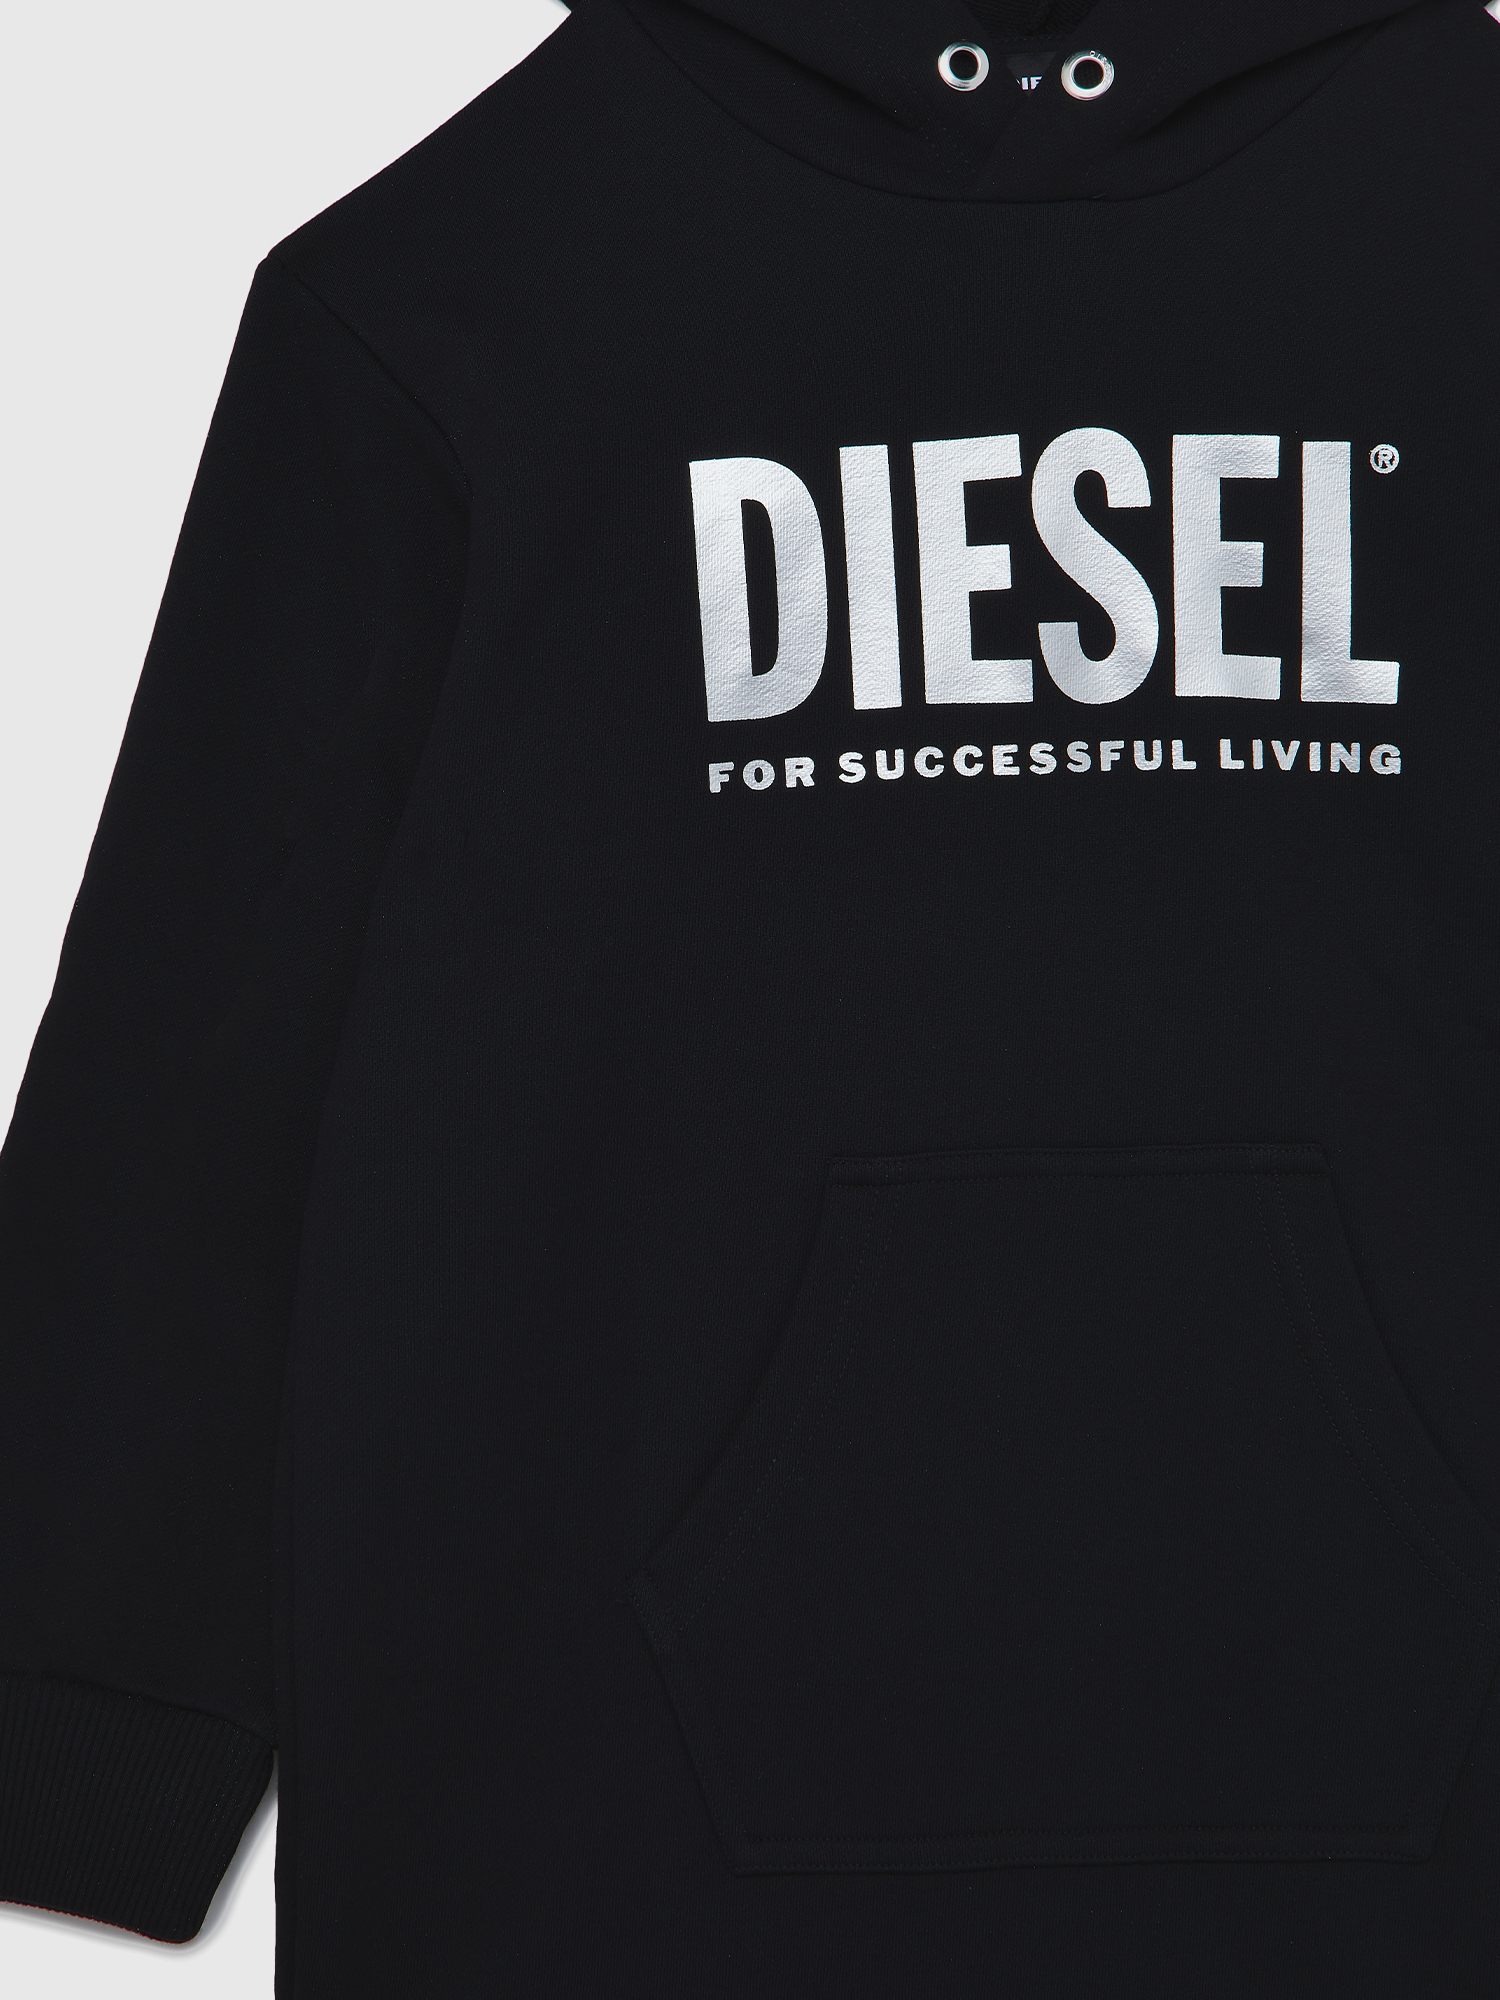 Diesel - DILSET, Black - Image 3